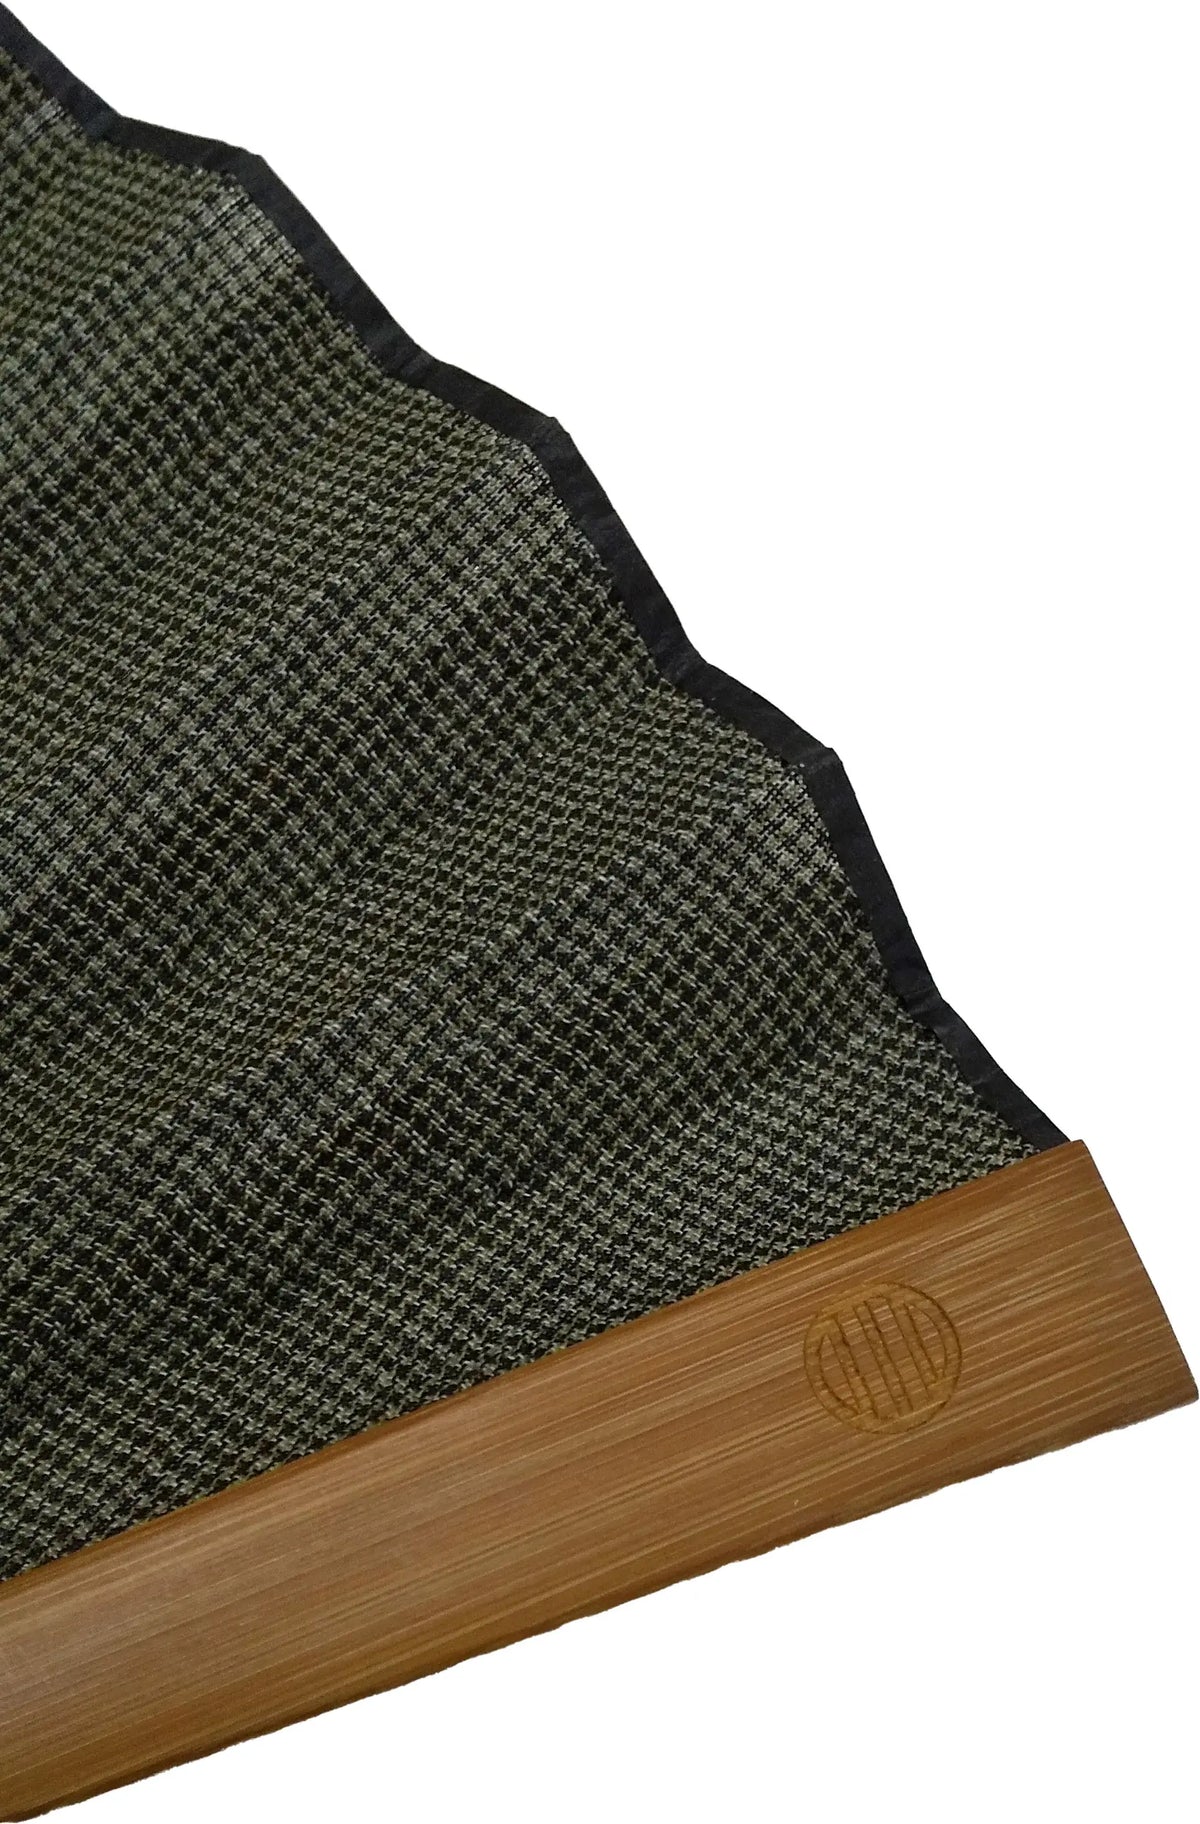 Ojiya Shuko Fan mit dunkelgrüner Gitterfächertasche, in einer Box aus Paulownia-Holz.